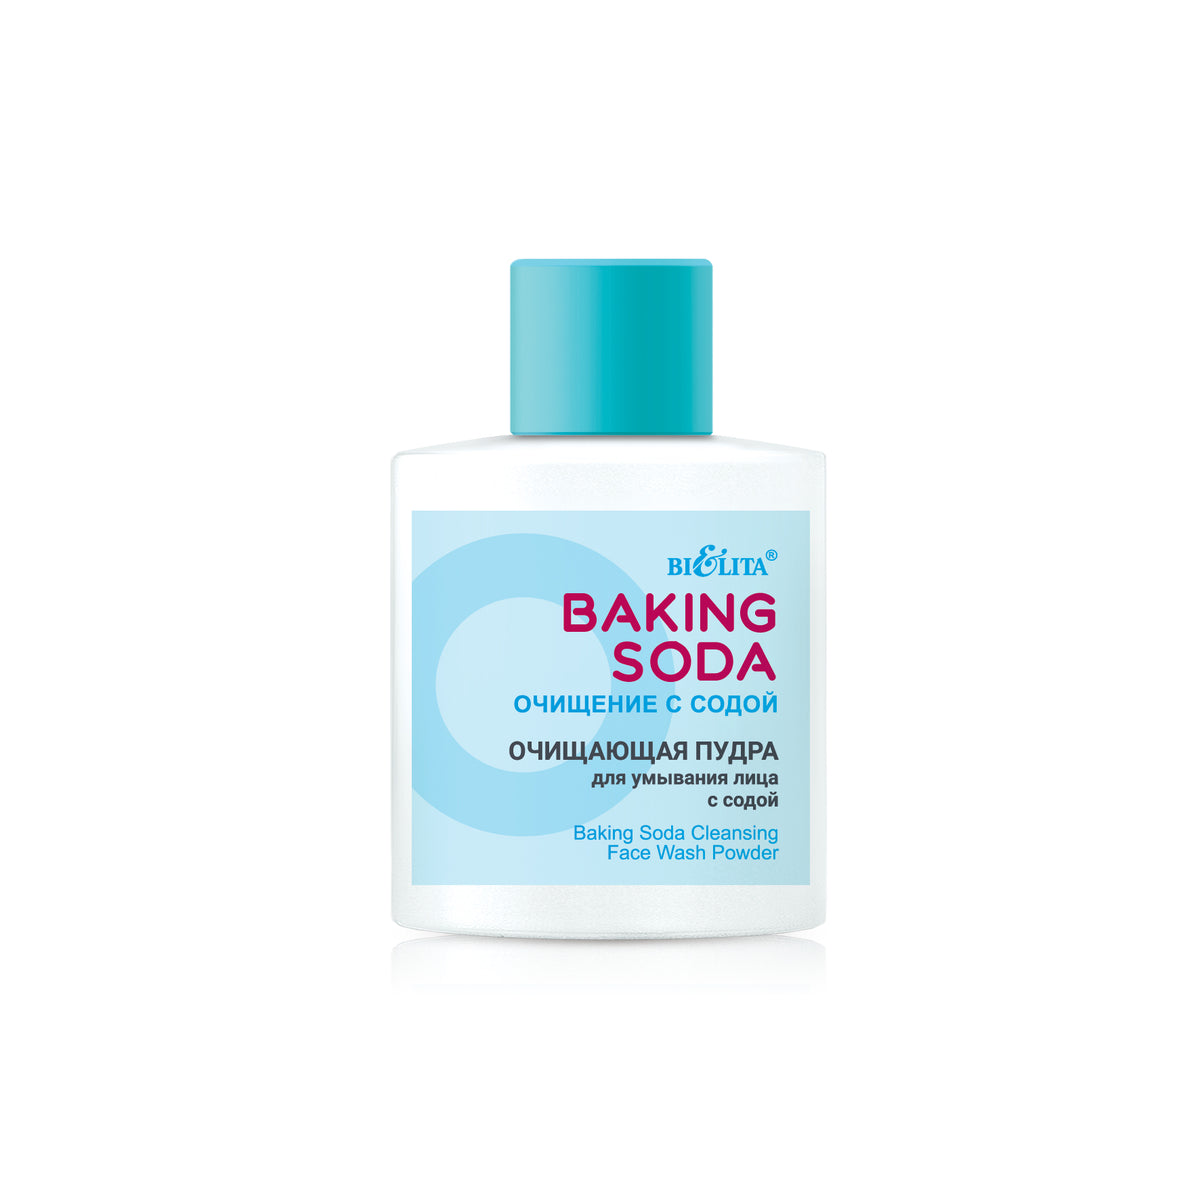 Baking Soda Karbonat İçerikli Yüz Temizleme Pudrası (53 gr) | Auraline Cosmetics